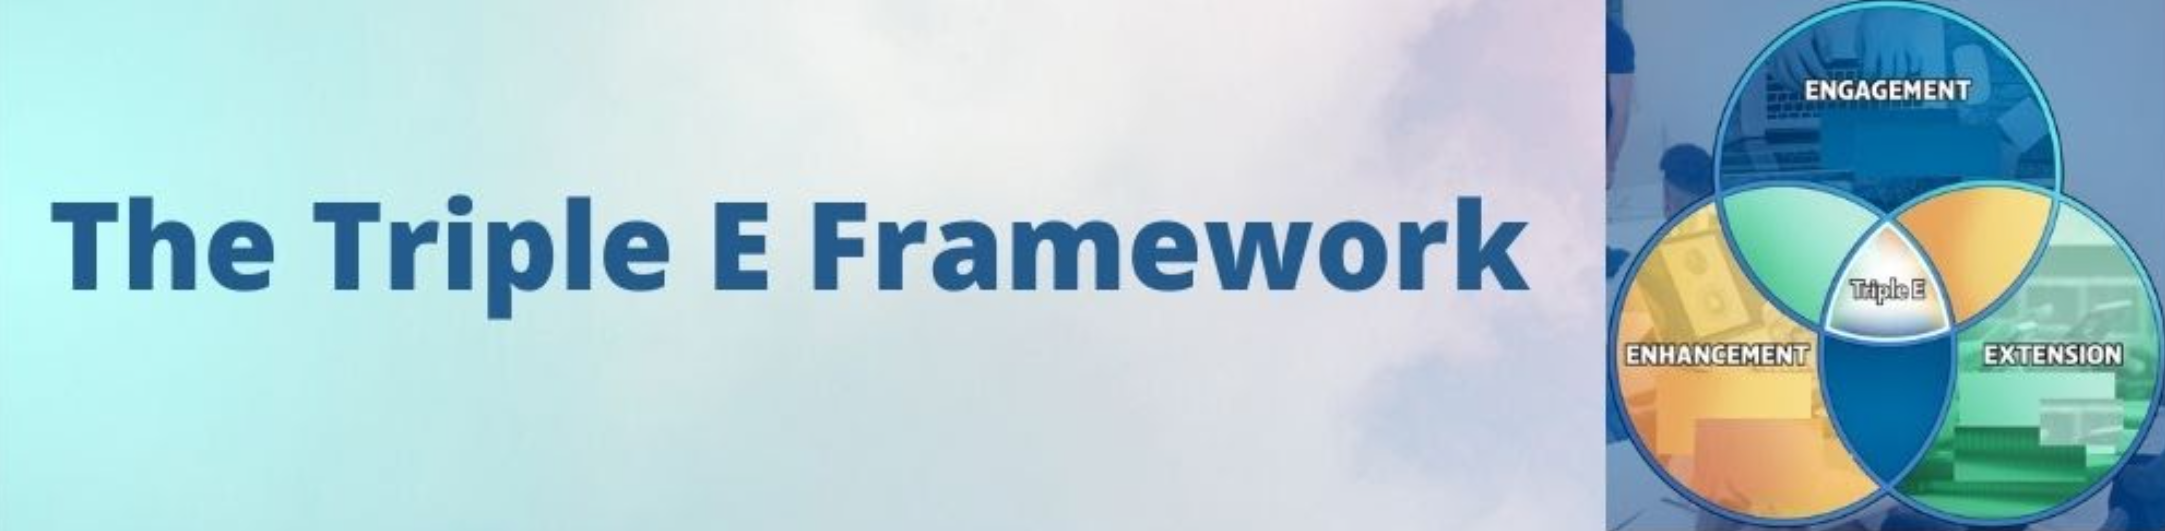 Triple E Framework banner